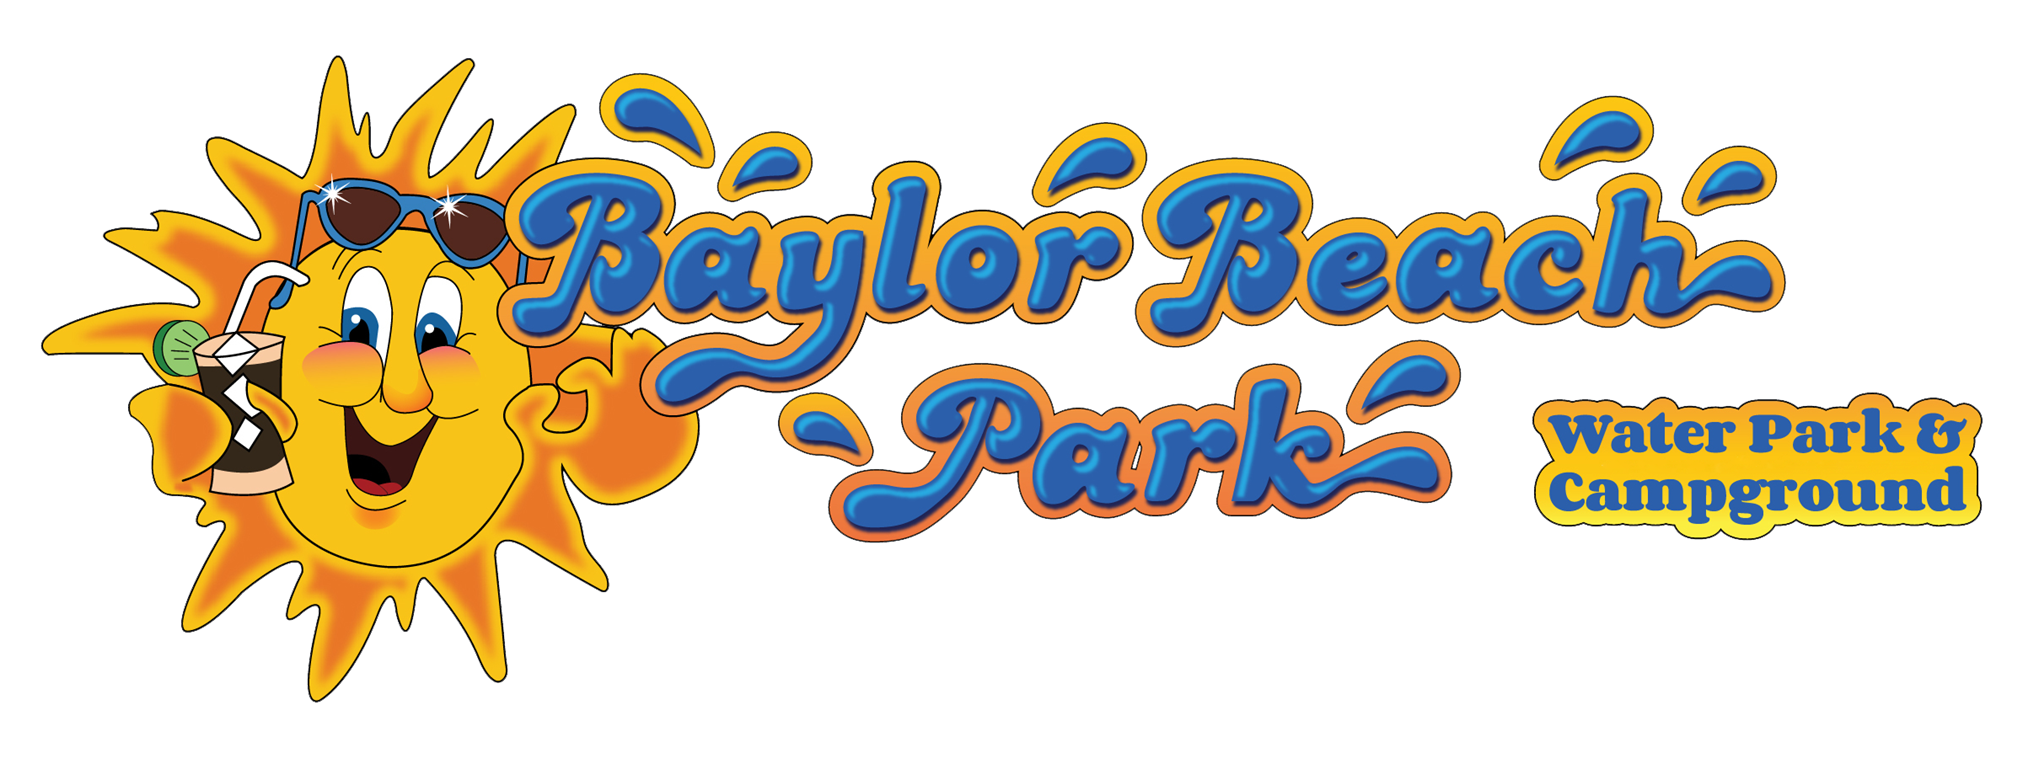 Baylor Beach Park